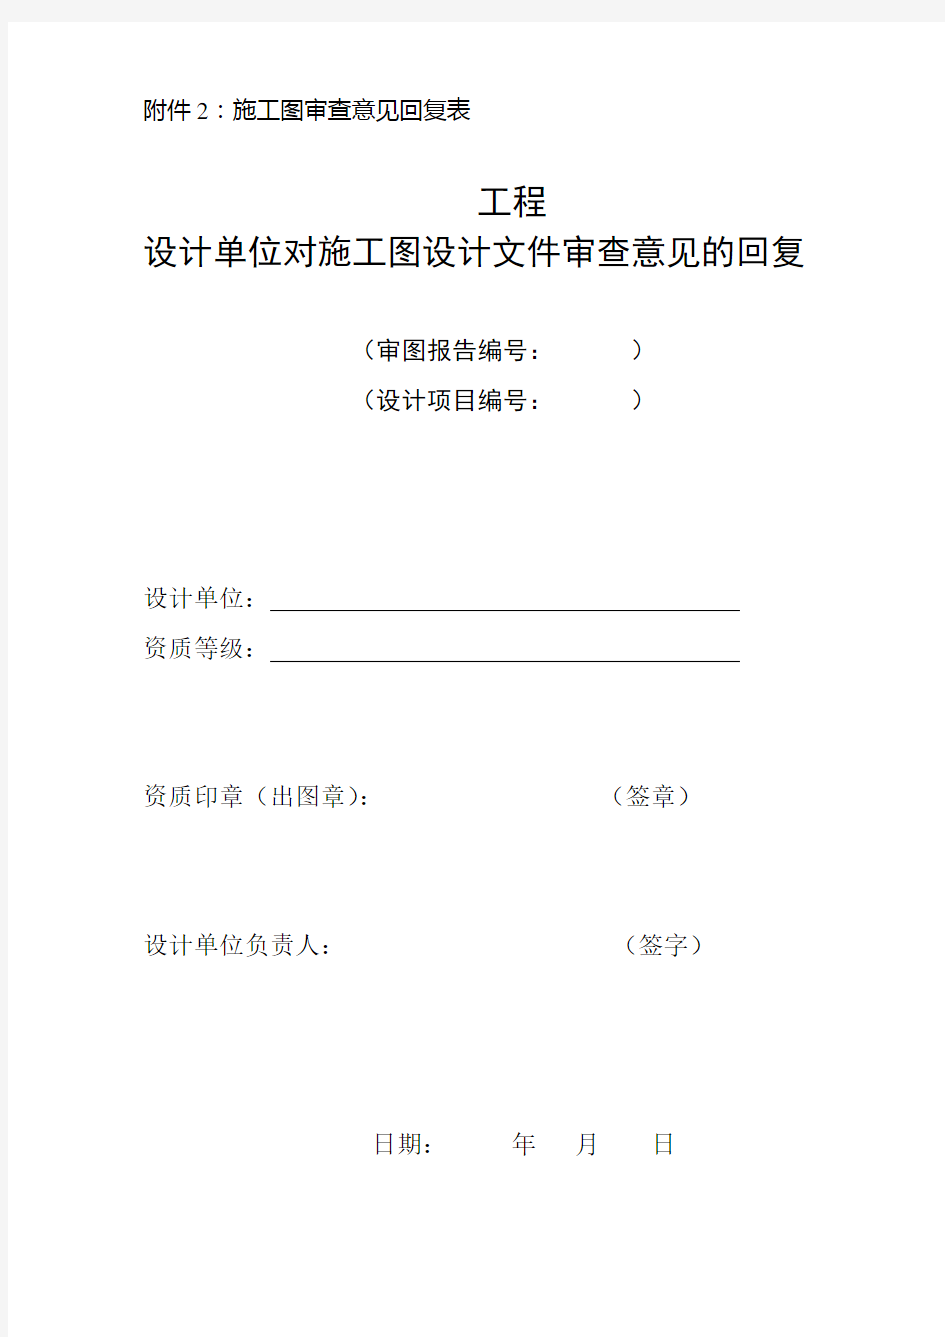 四川省(规定格式)施工图设计文件审查意见回复表